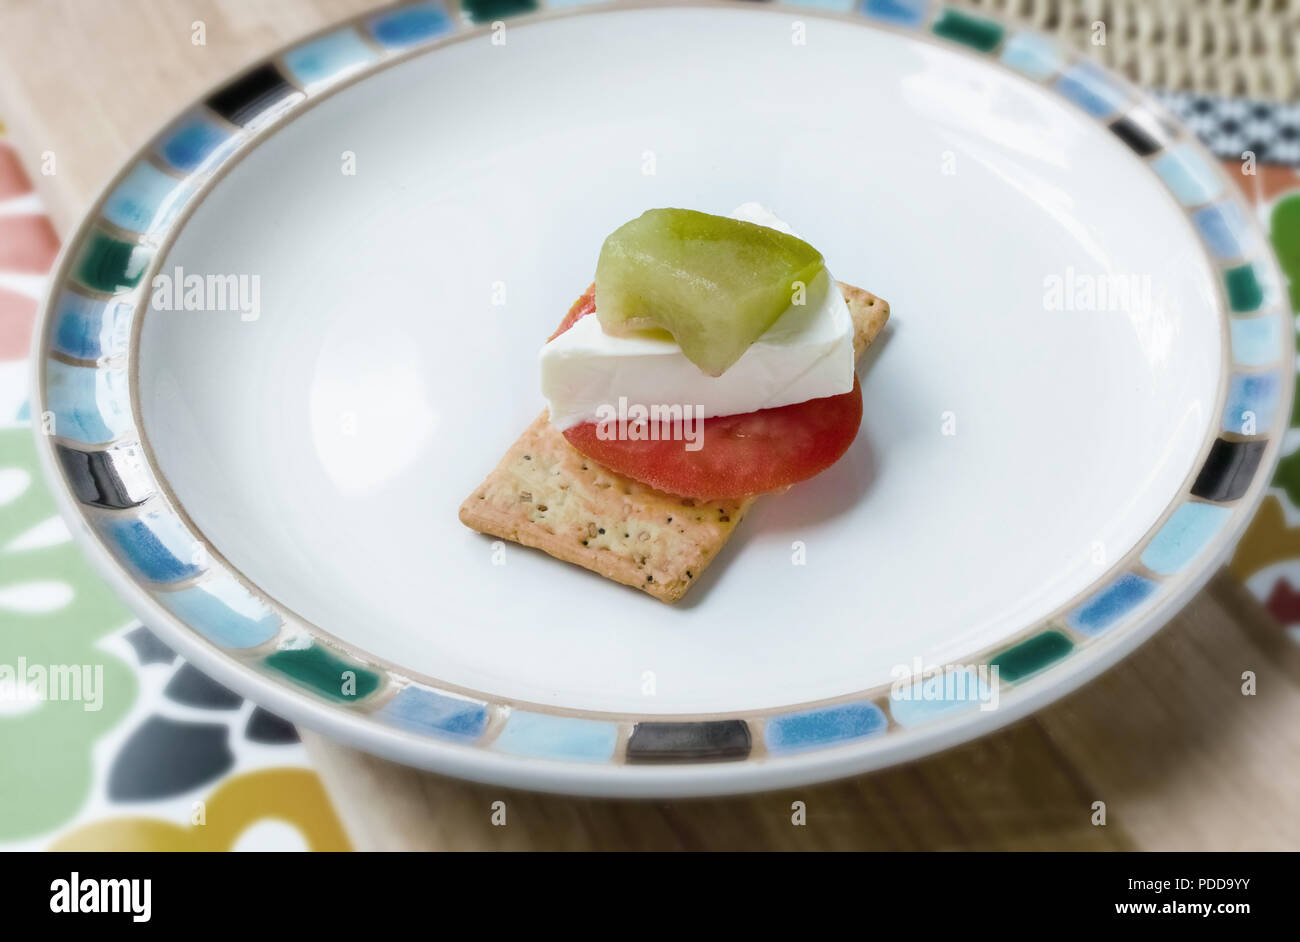 En la placa, en una galleta salada, tenemos una rodaja de tomate, queso, un trozo de melón Foto de stock